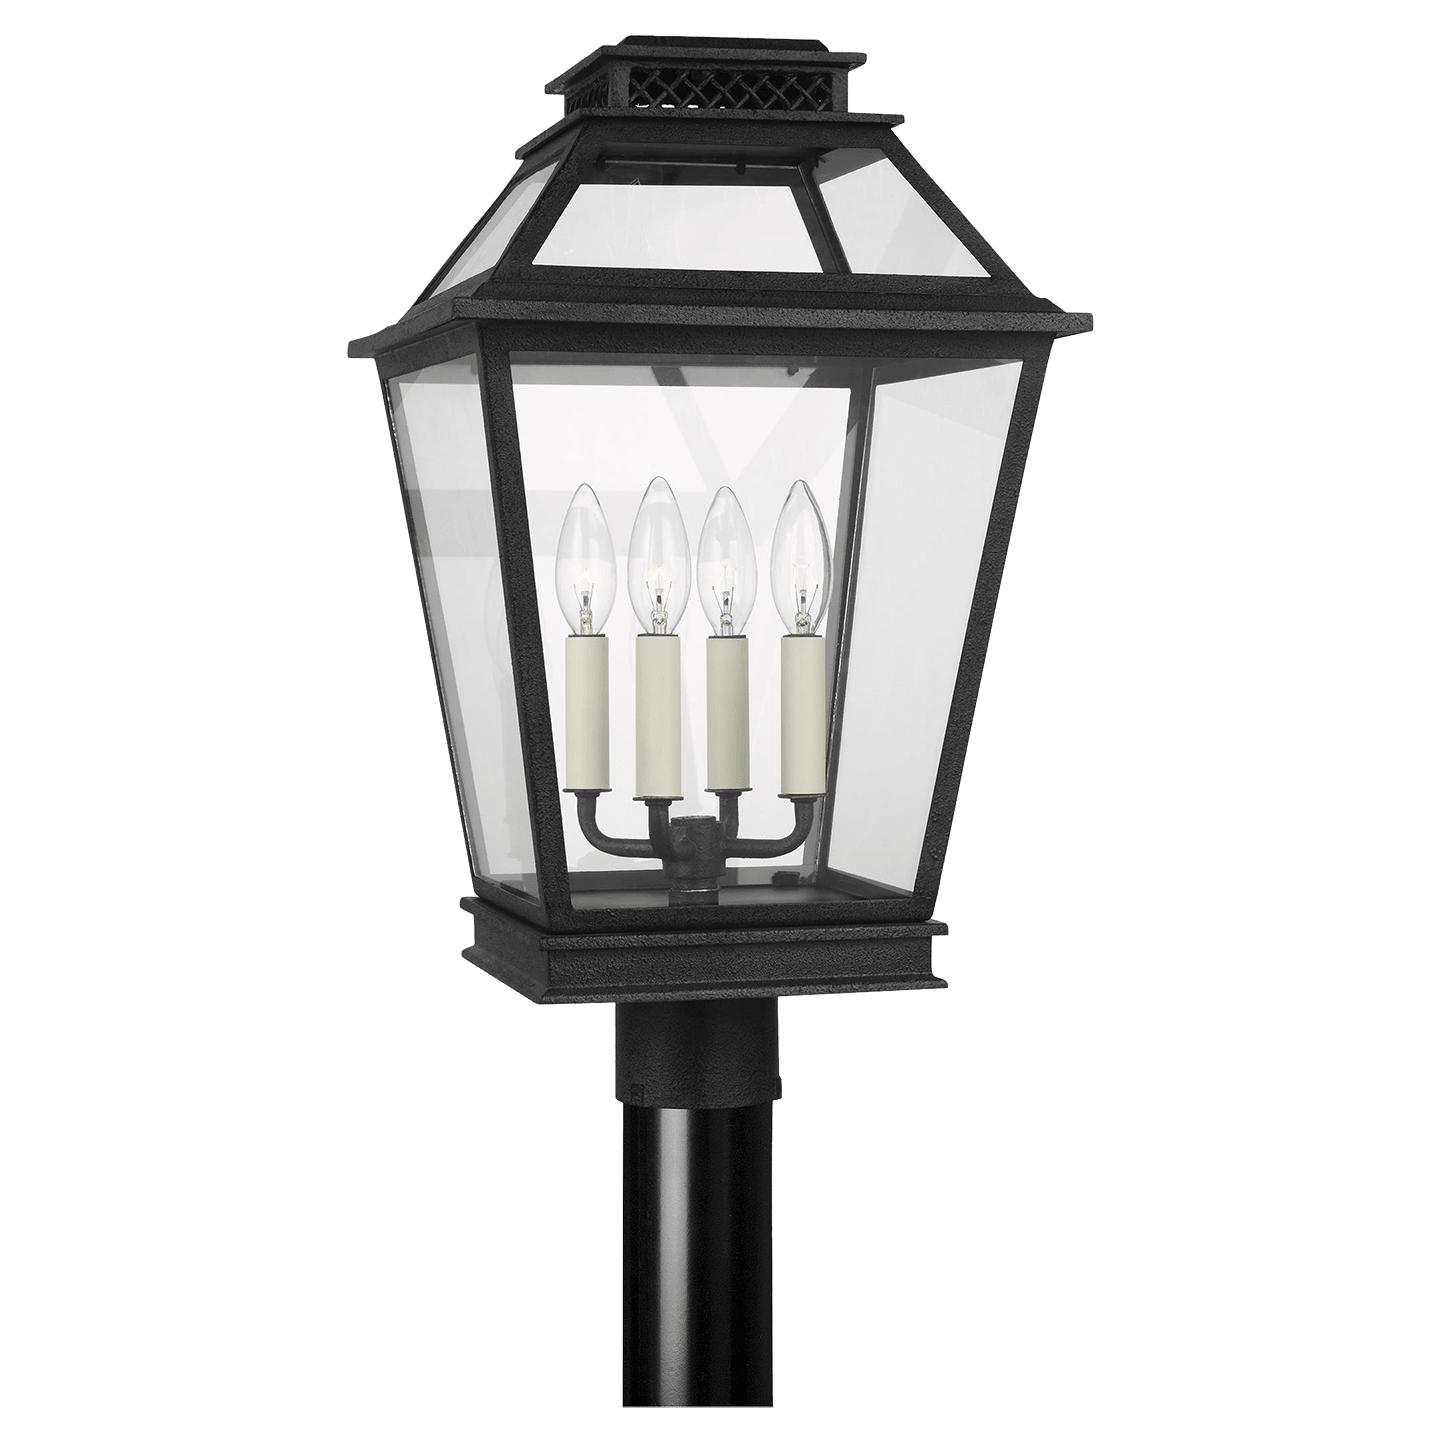 Купить Уличный фонарь Falmouth Post Lantern в интернет-магазине roooms.ru